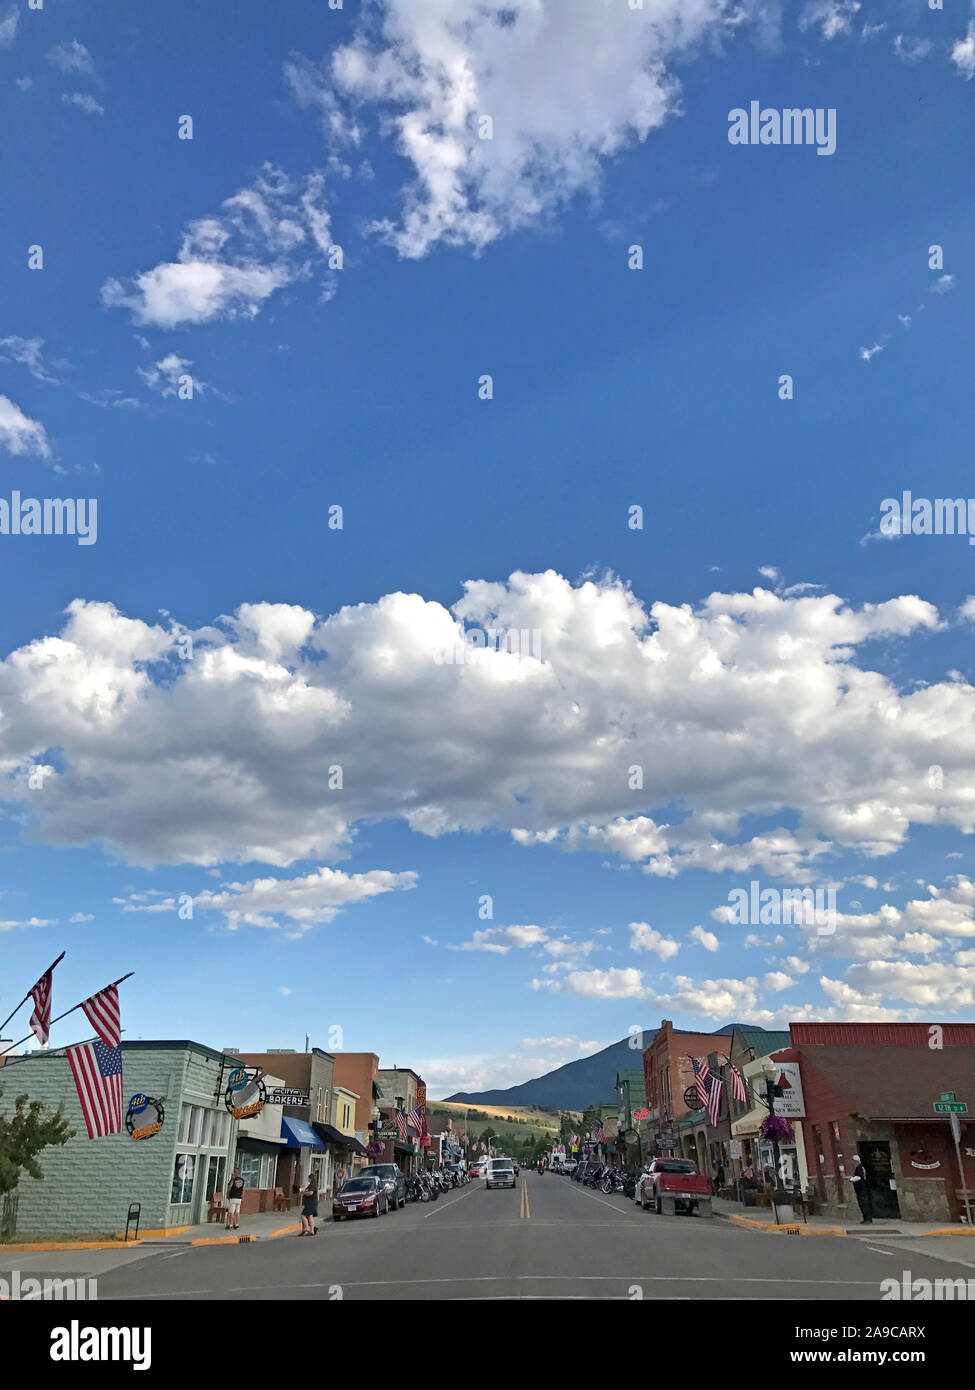 Città di montagna con cielo blu e nuvole, montagne, bandierine americane Foto Stock